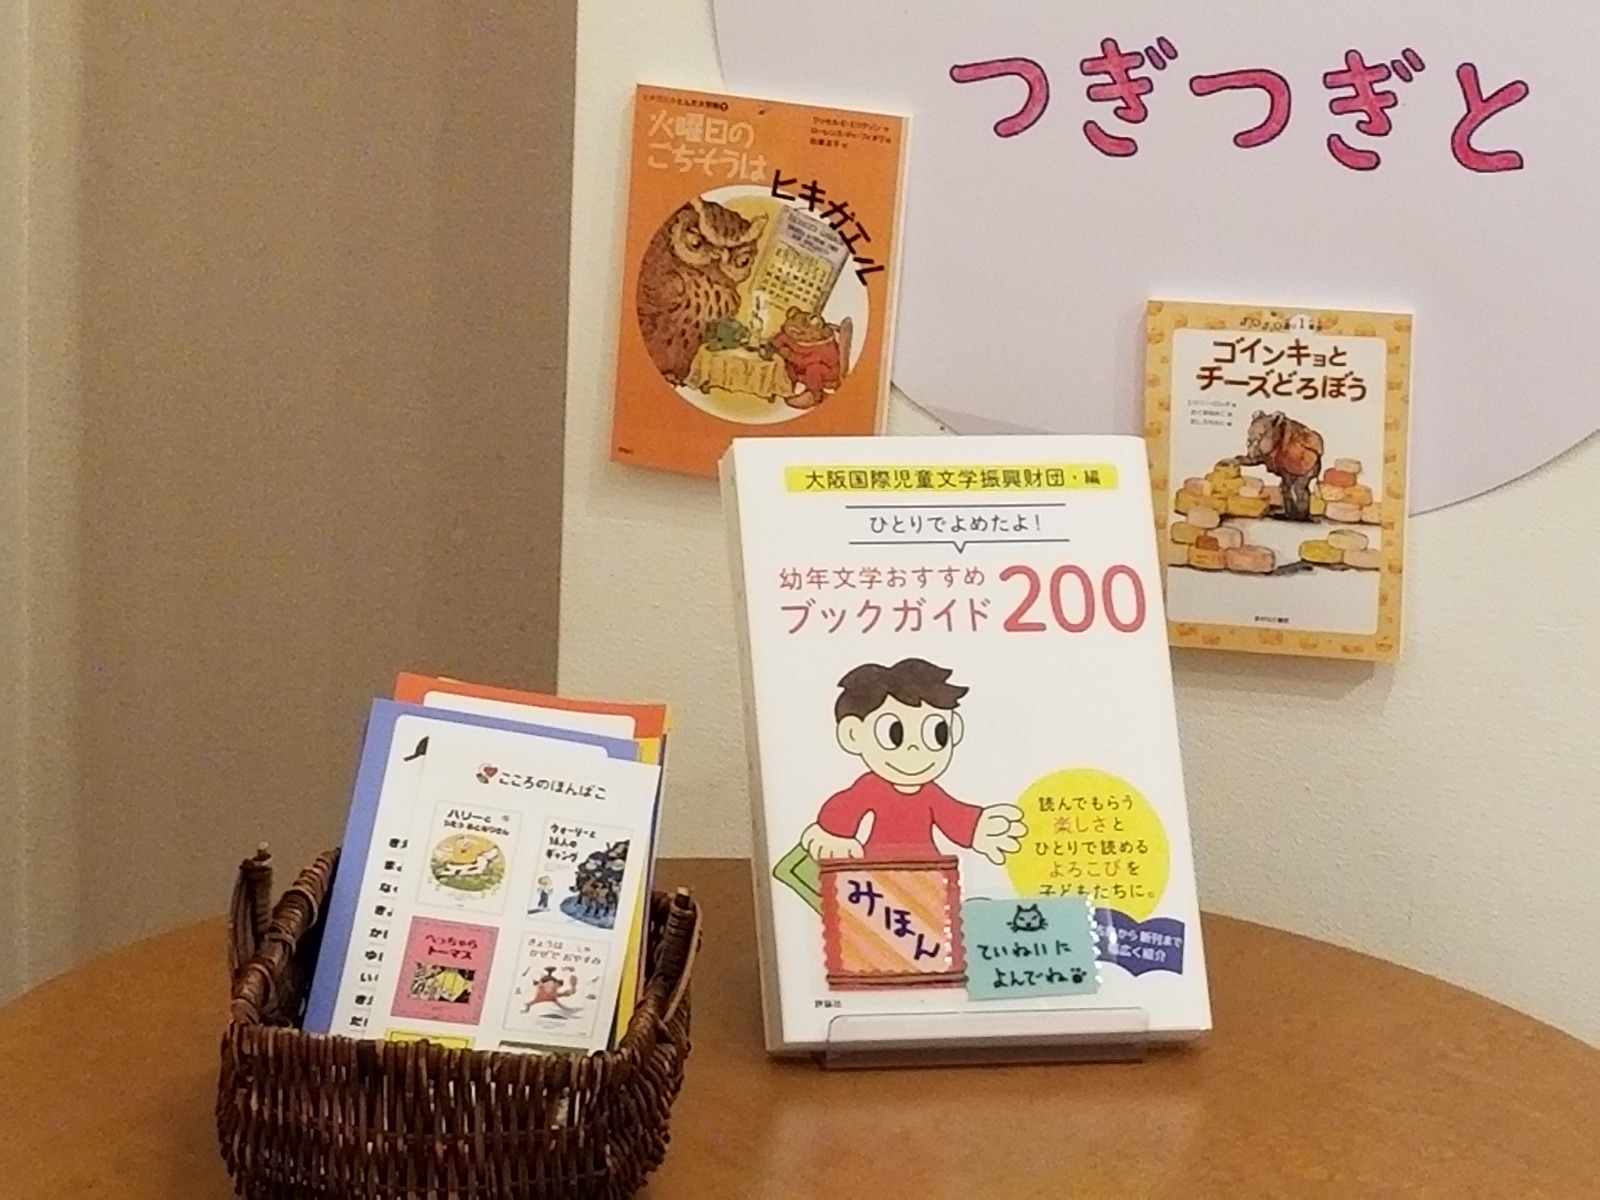 『ひとりでよめたよ！幼年文学おすすめブックガイド200』の関連書籍が展示されます！！